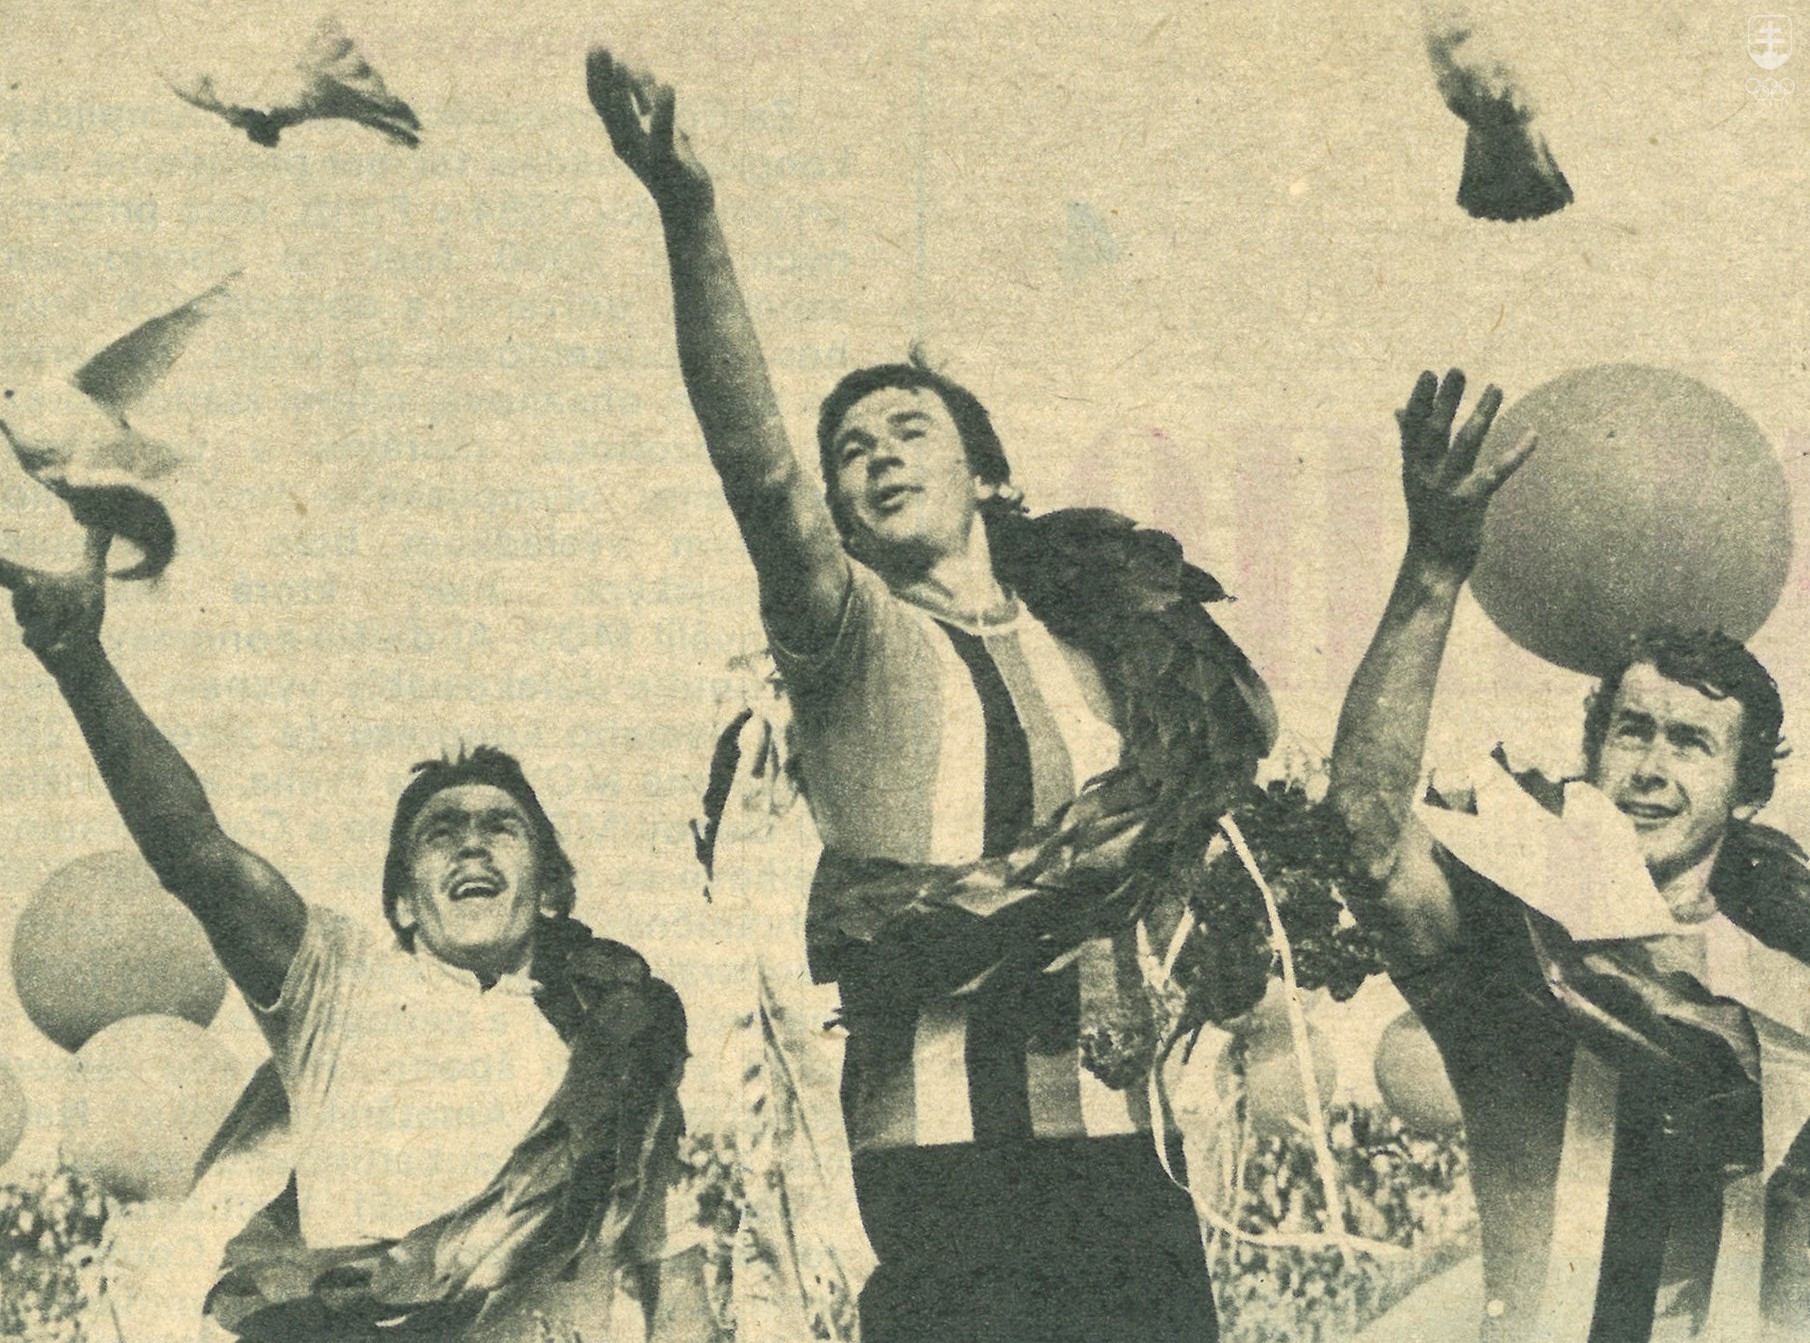 Na momentke z roku 1976 na najvyššom etapovom stupni Slovák Pavol Gálik, vľavo Pikuus zo ZSSR, vpravo Moravec z ČSSR. Do rúk premiantov neodmysliteľne patrili mierové holubice.